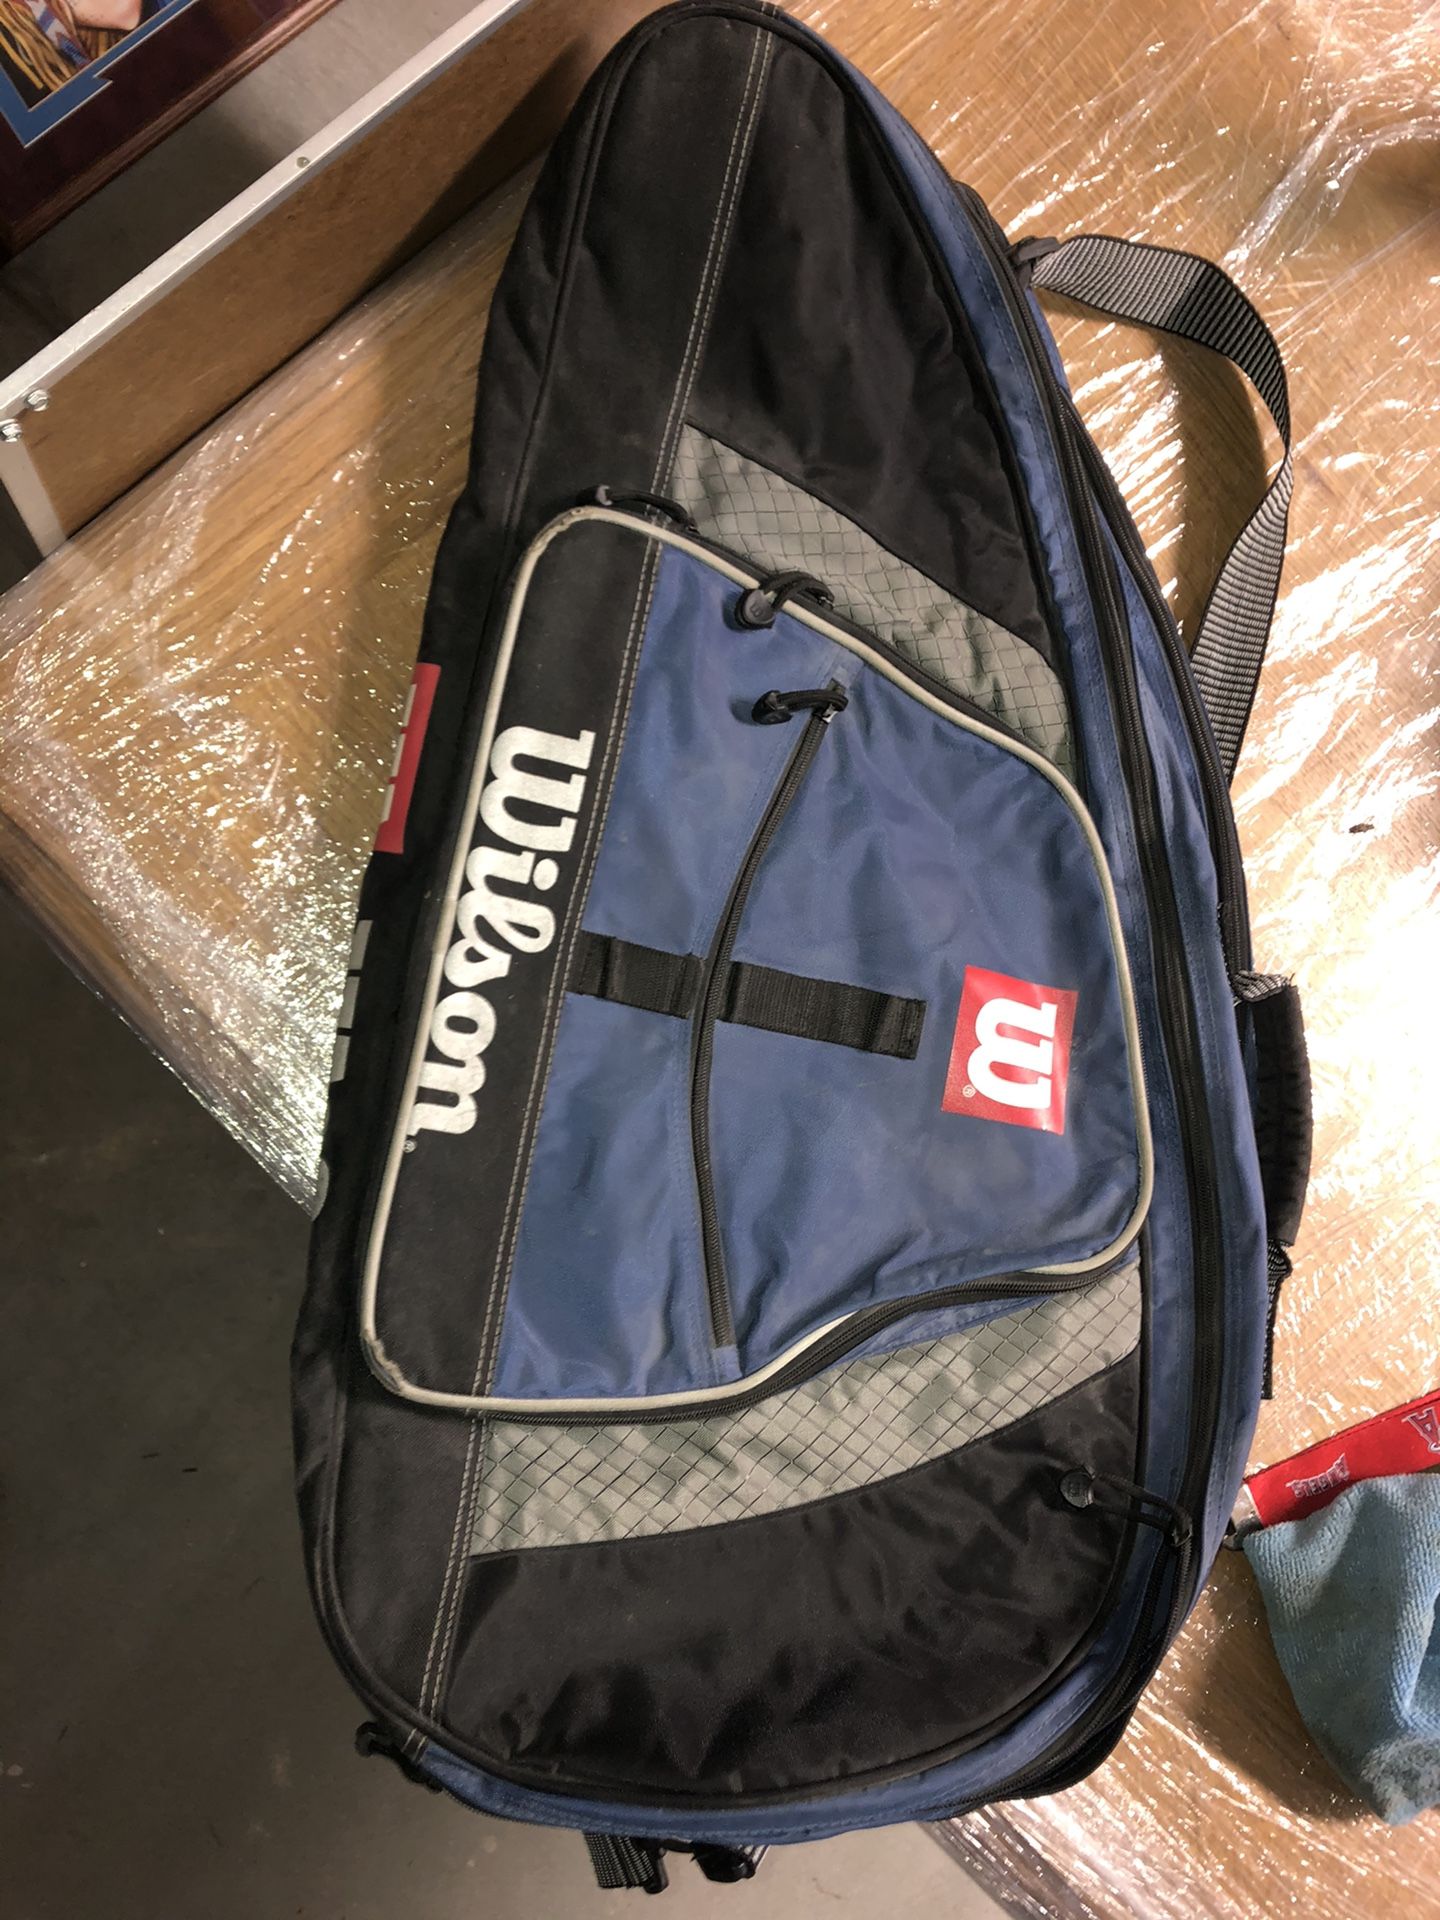 Wilson tennis bags